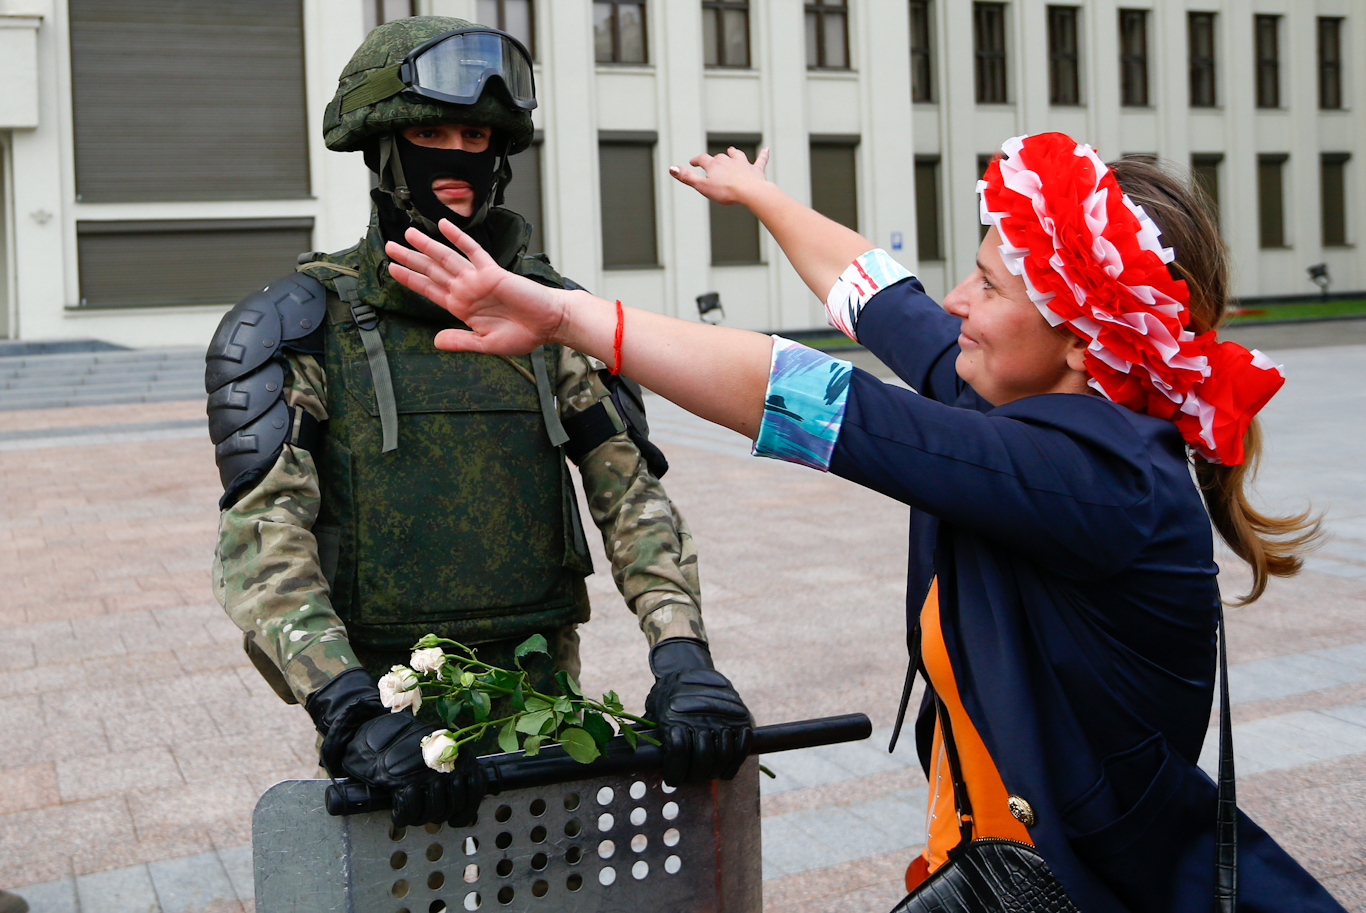 Protestas en Bielorrusia